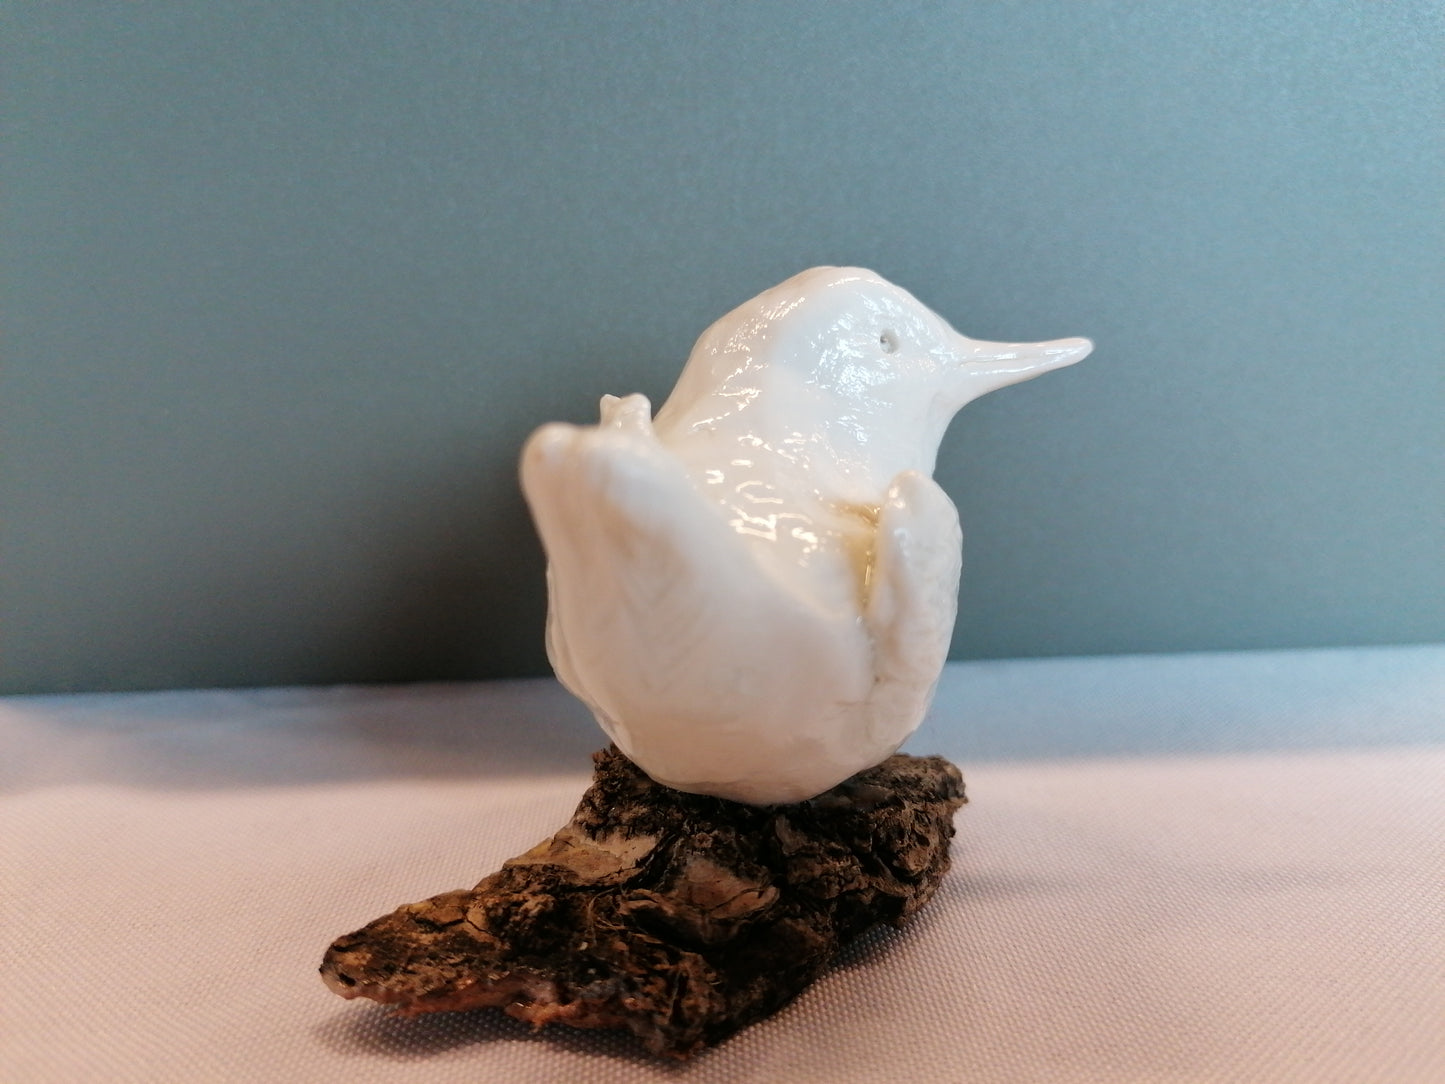 Oiseau de porcelaine n°6 by Sandrine De Zorzi